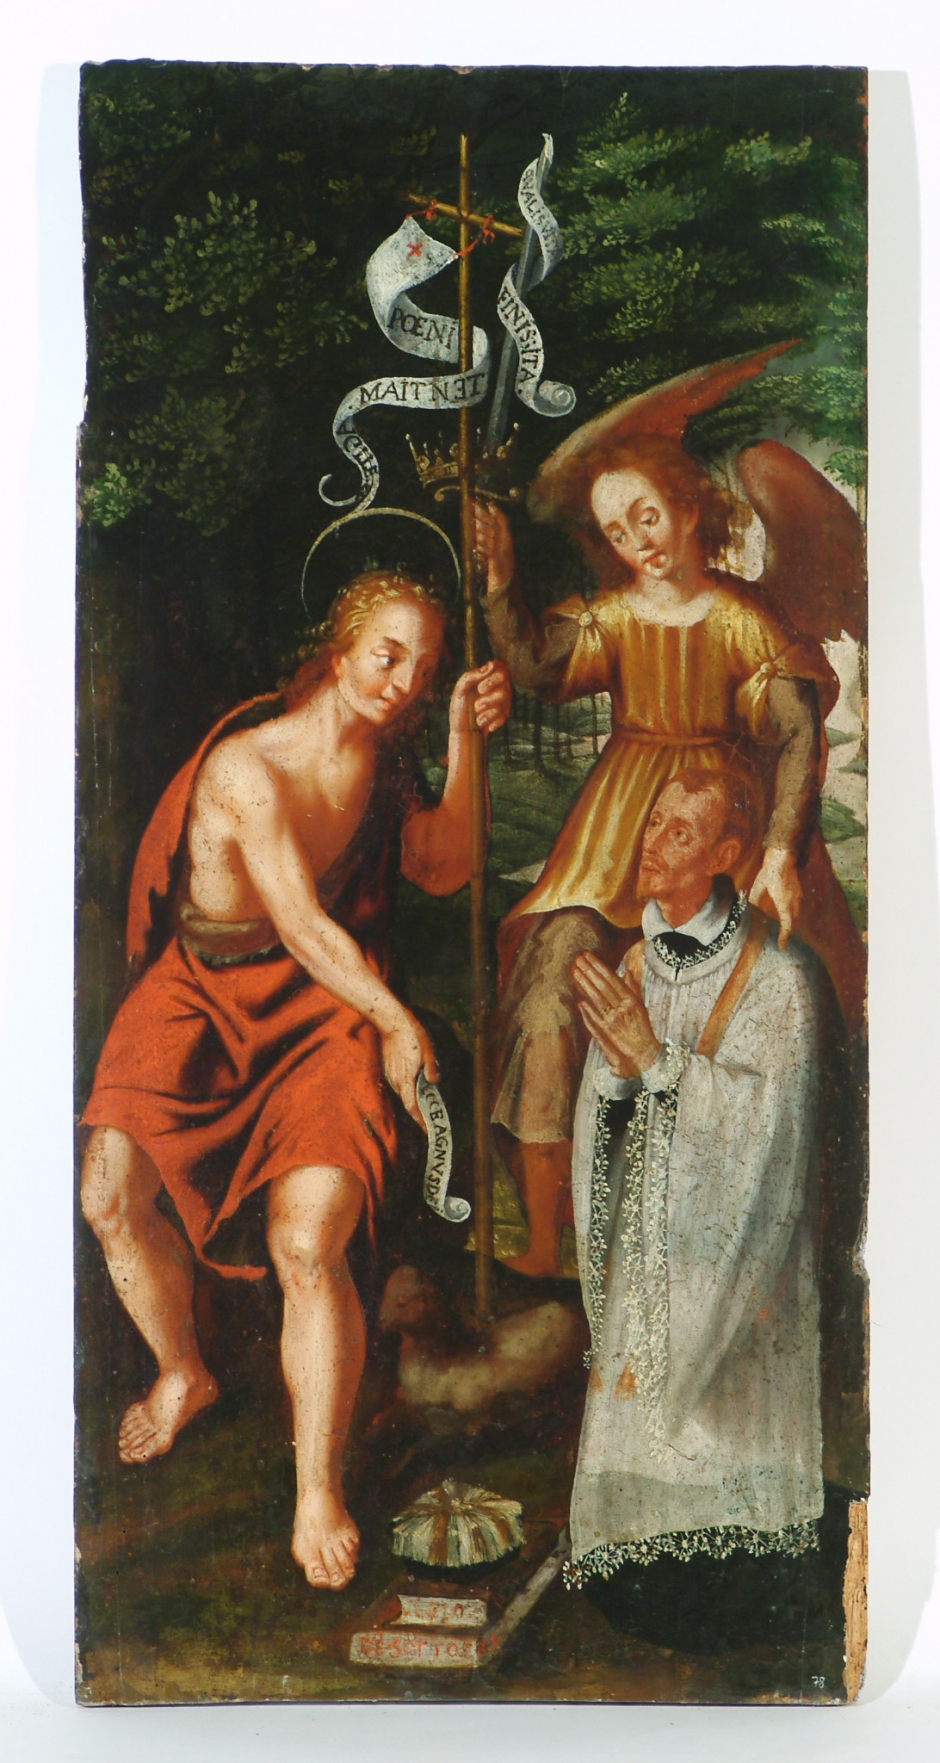 Pintura de sant Joan Baptista, procedent de l'església de Sant Salvador de Torroella, primera meitat del s. XVII. Ubicació actual: Museu Diocesà i Comarcal de Solsona (MDCS 78.1)